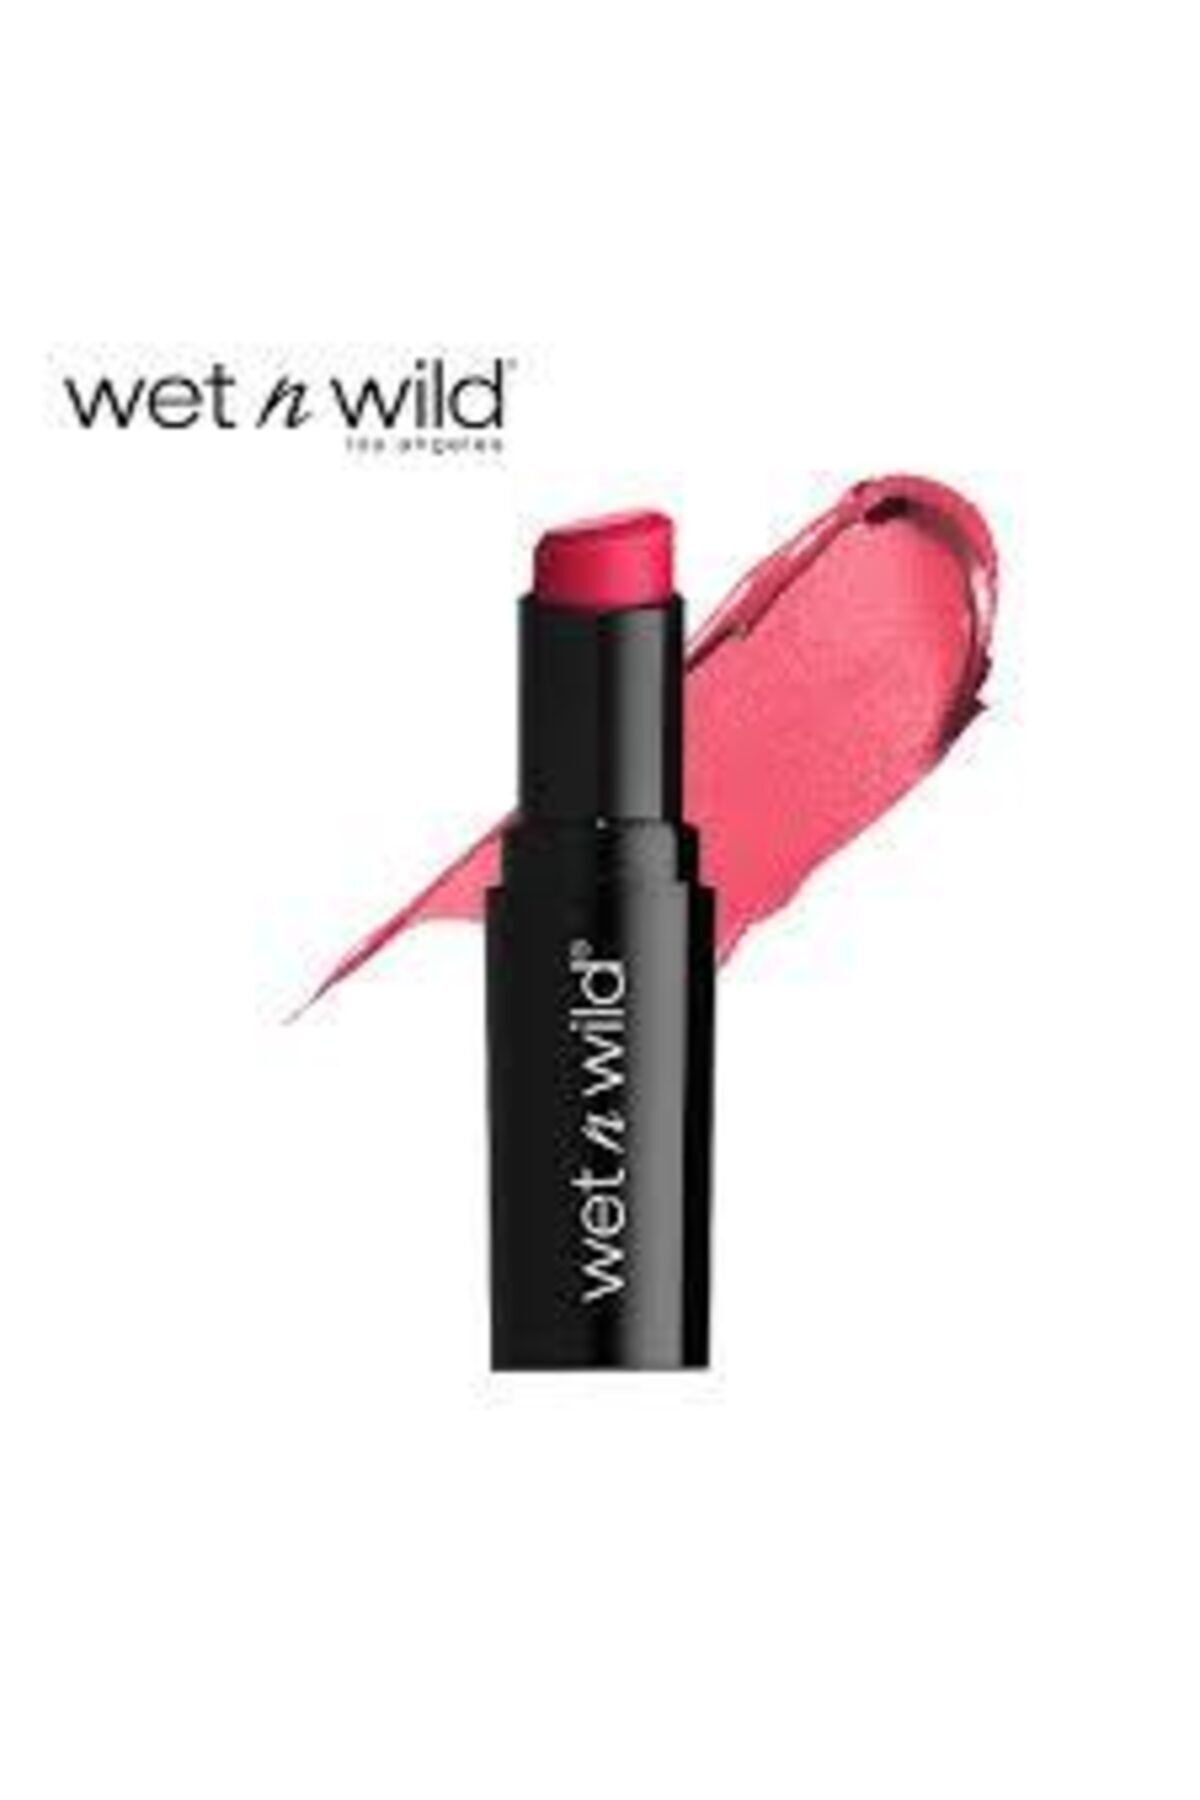 WET N WİLD Wet'n Wild Megalast Lip Color Ruj 968